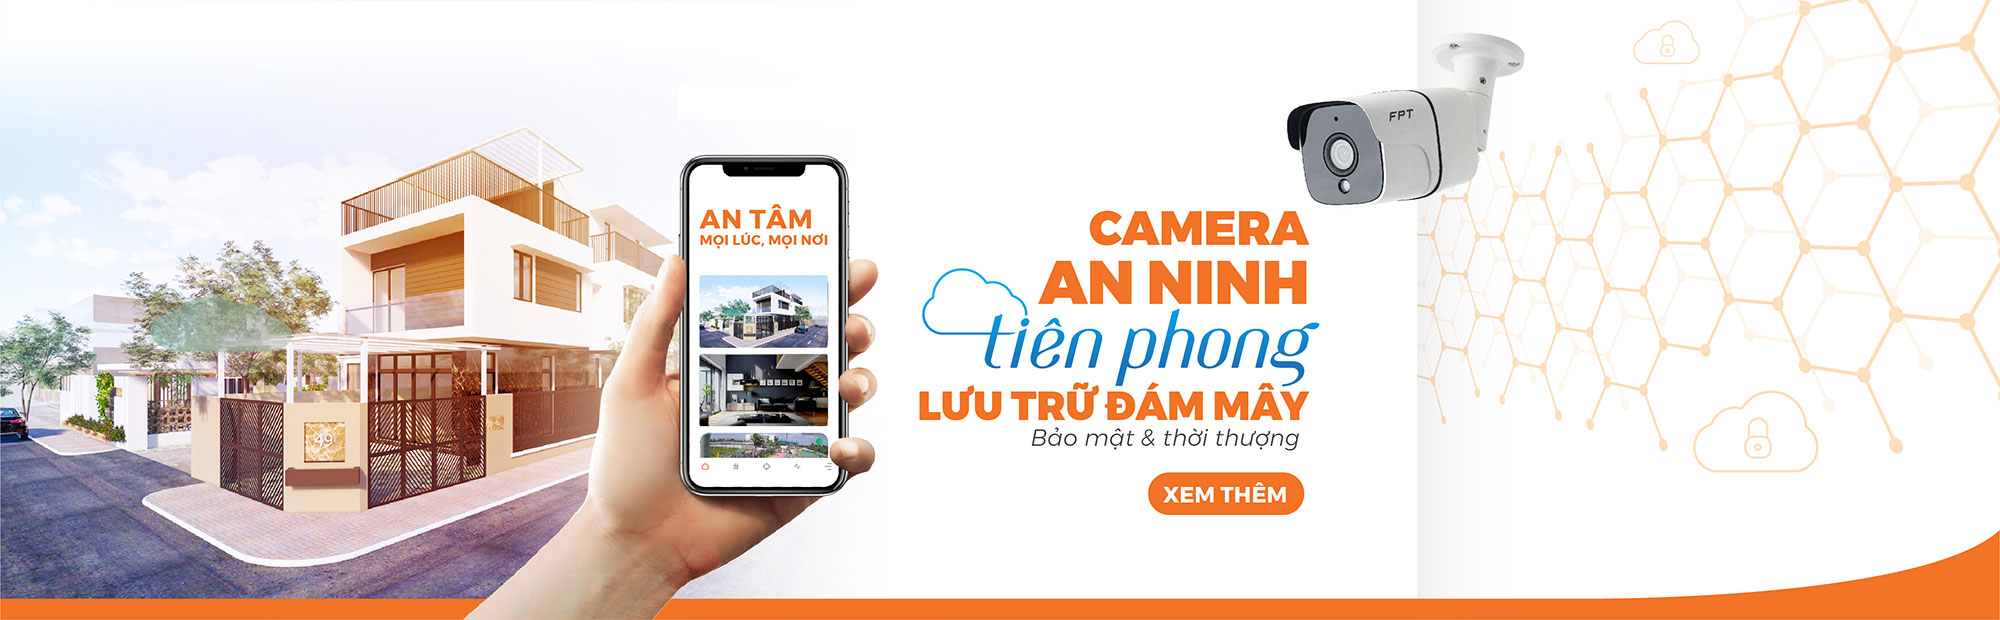 khuyến mãi lắp đặt camera FPT tại khu vực Hồ Chí Minh của FPT Telecom